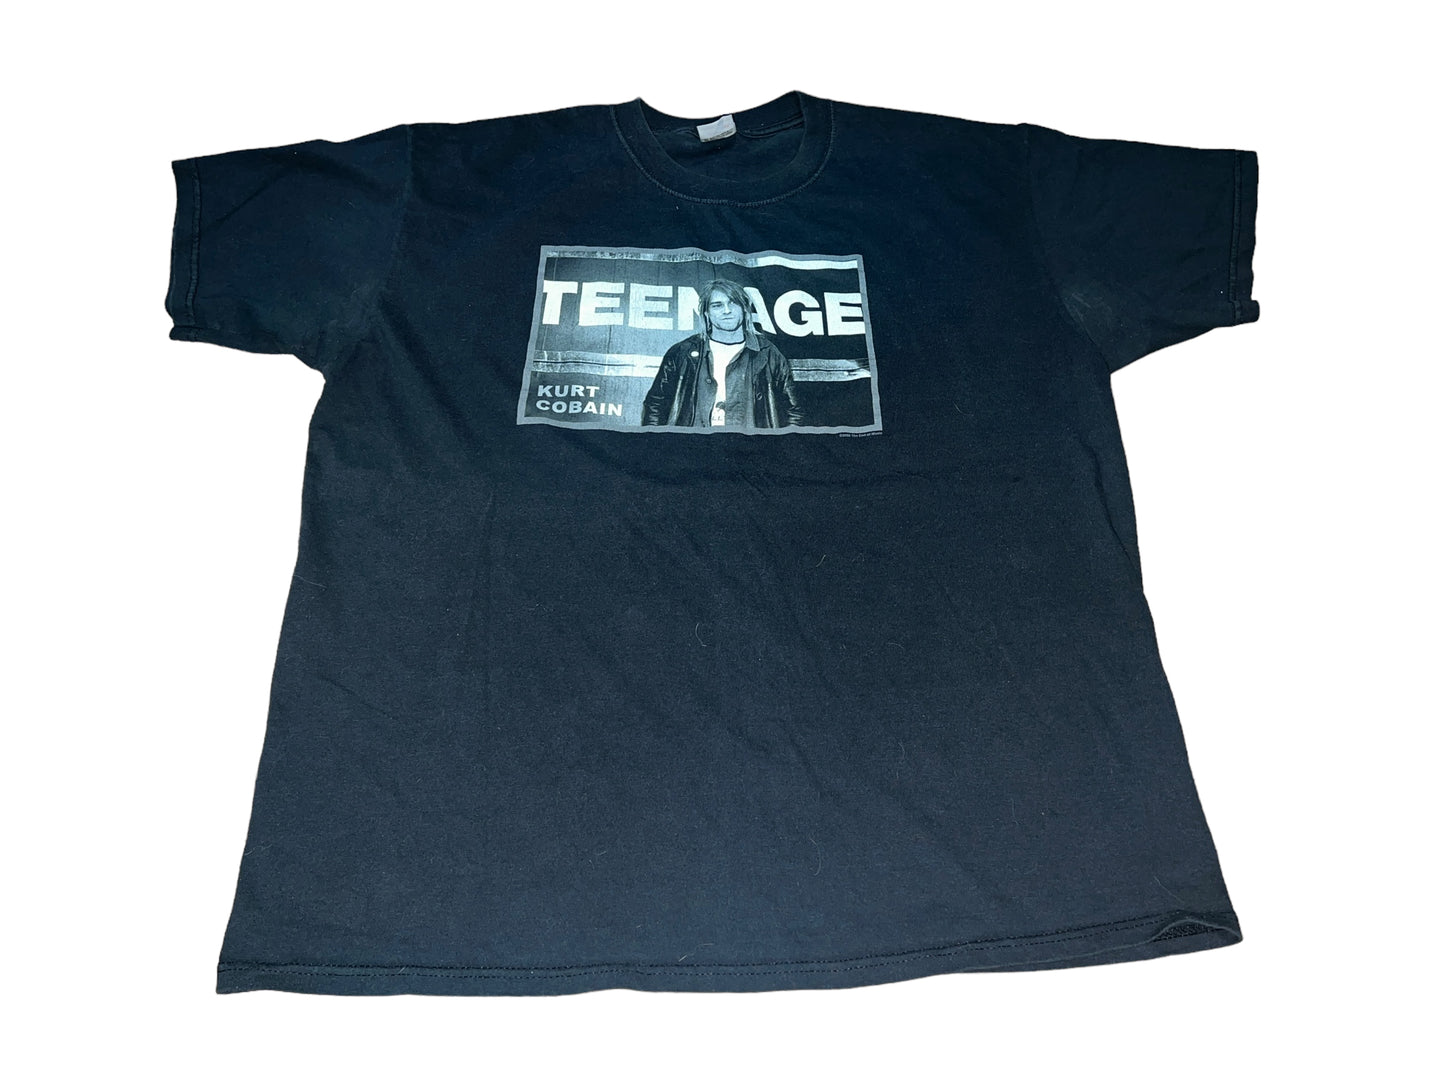 Vintage 2002 Kurt Cobain T-Shirt